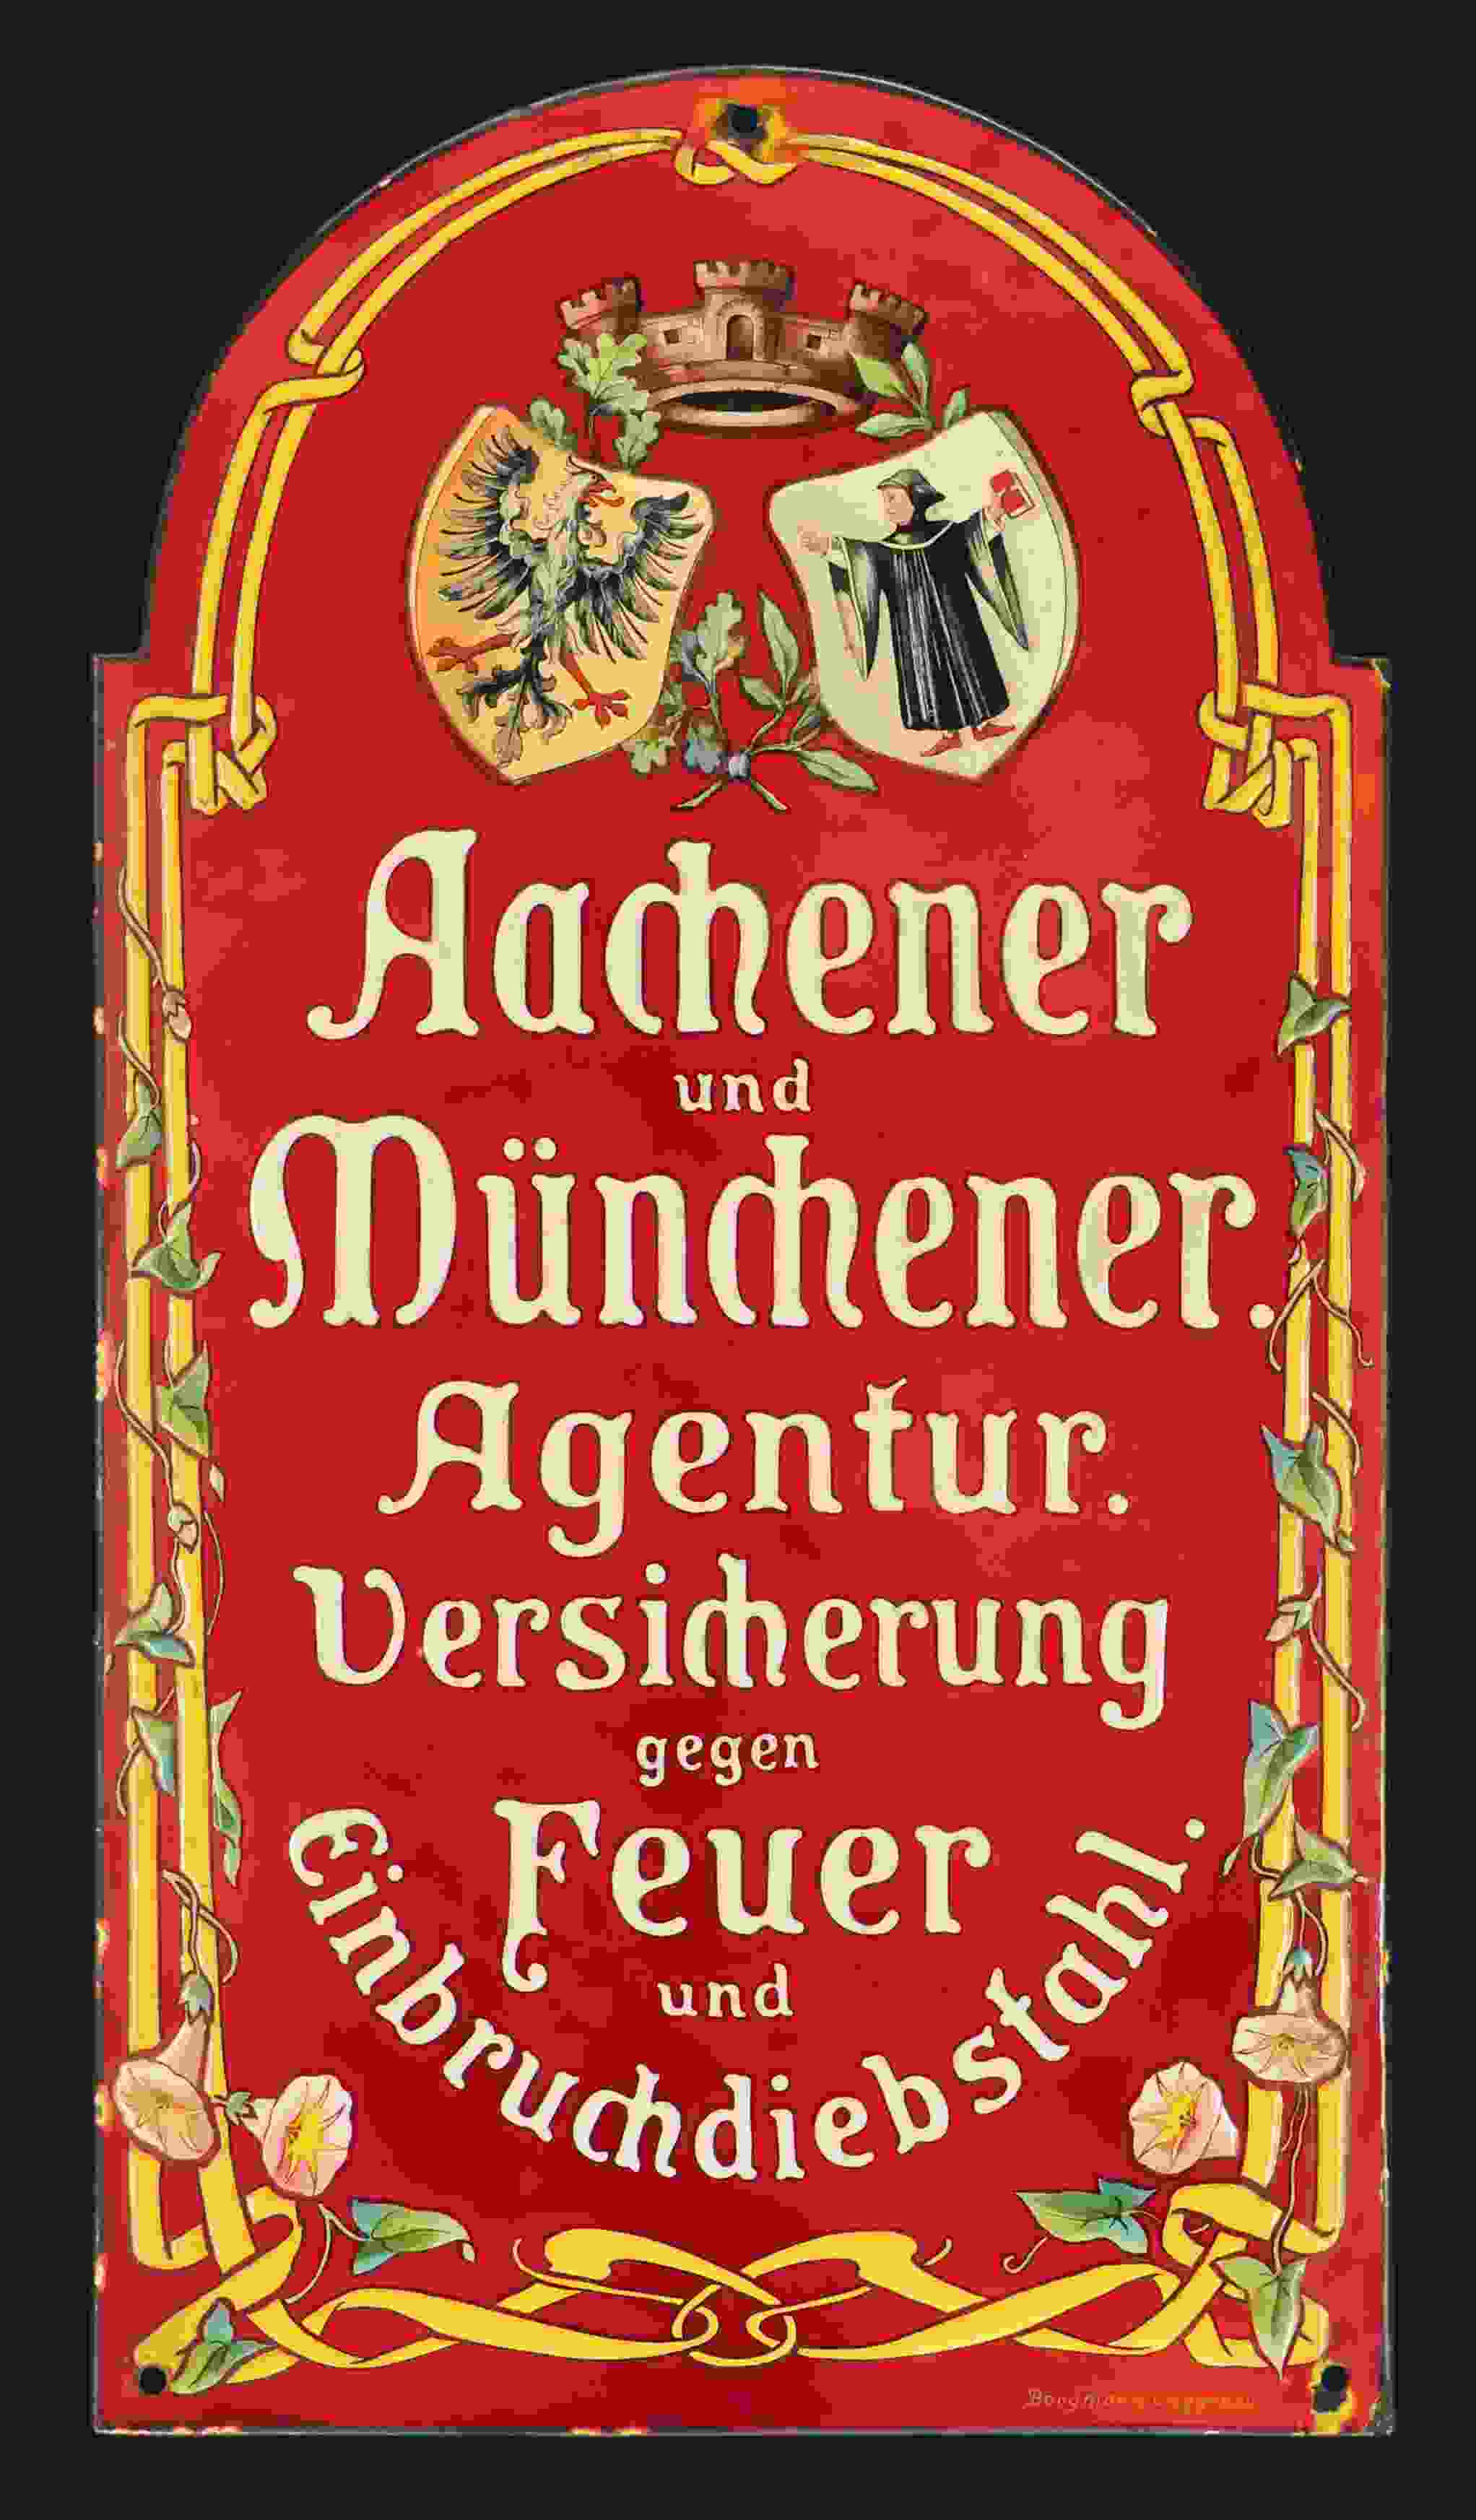 Aachen und Münchener 